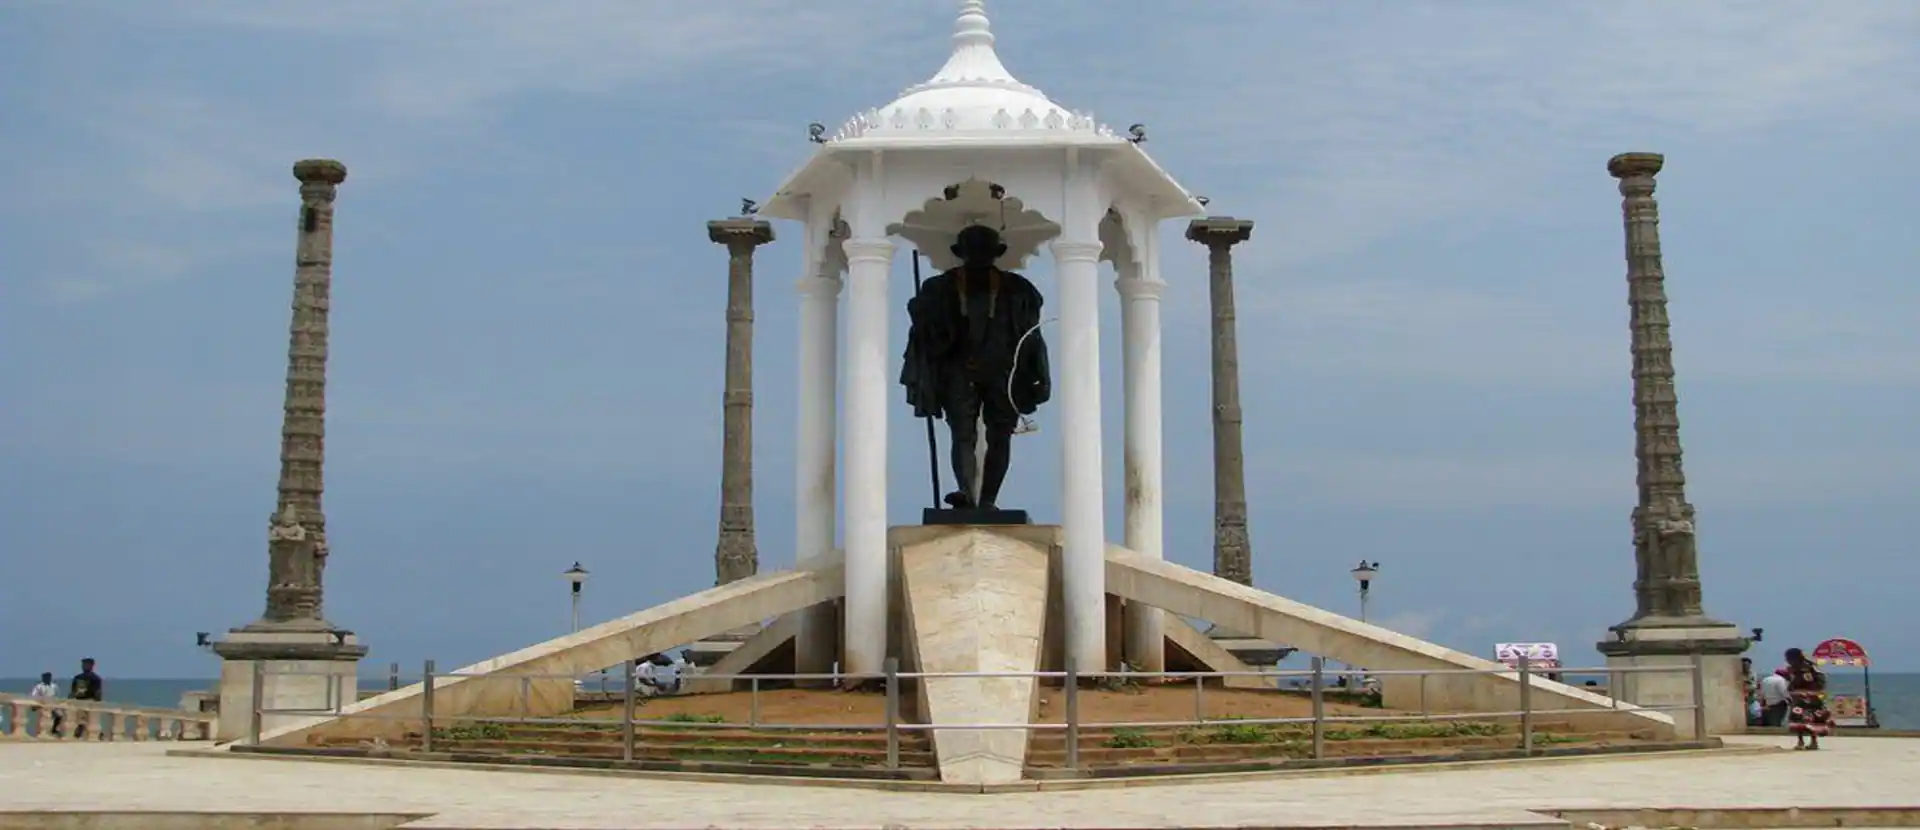 Pondicherry beach ride